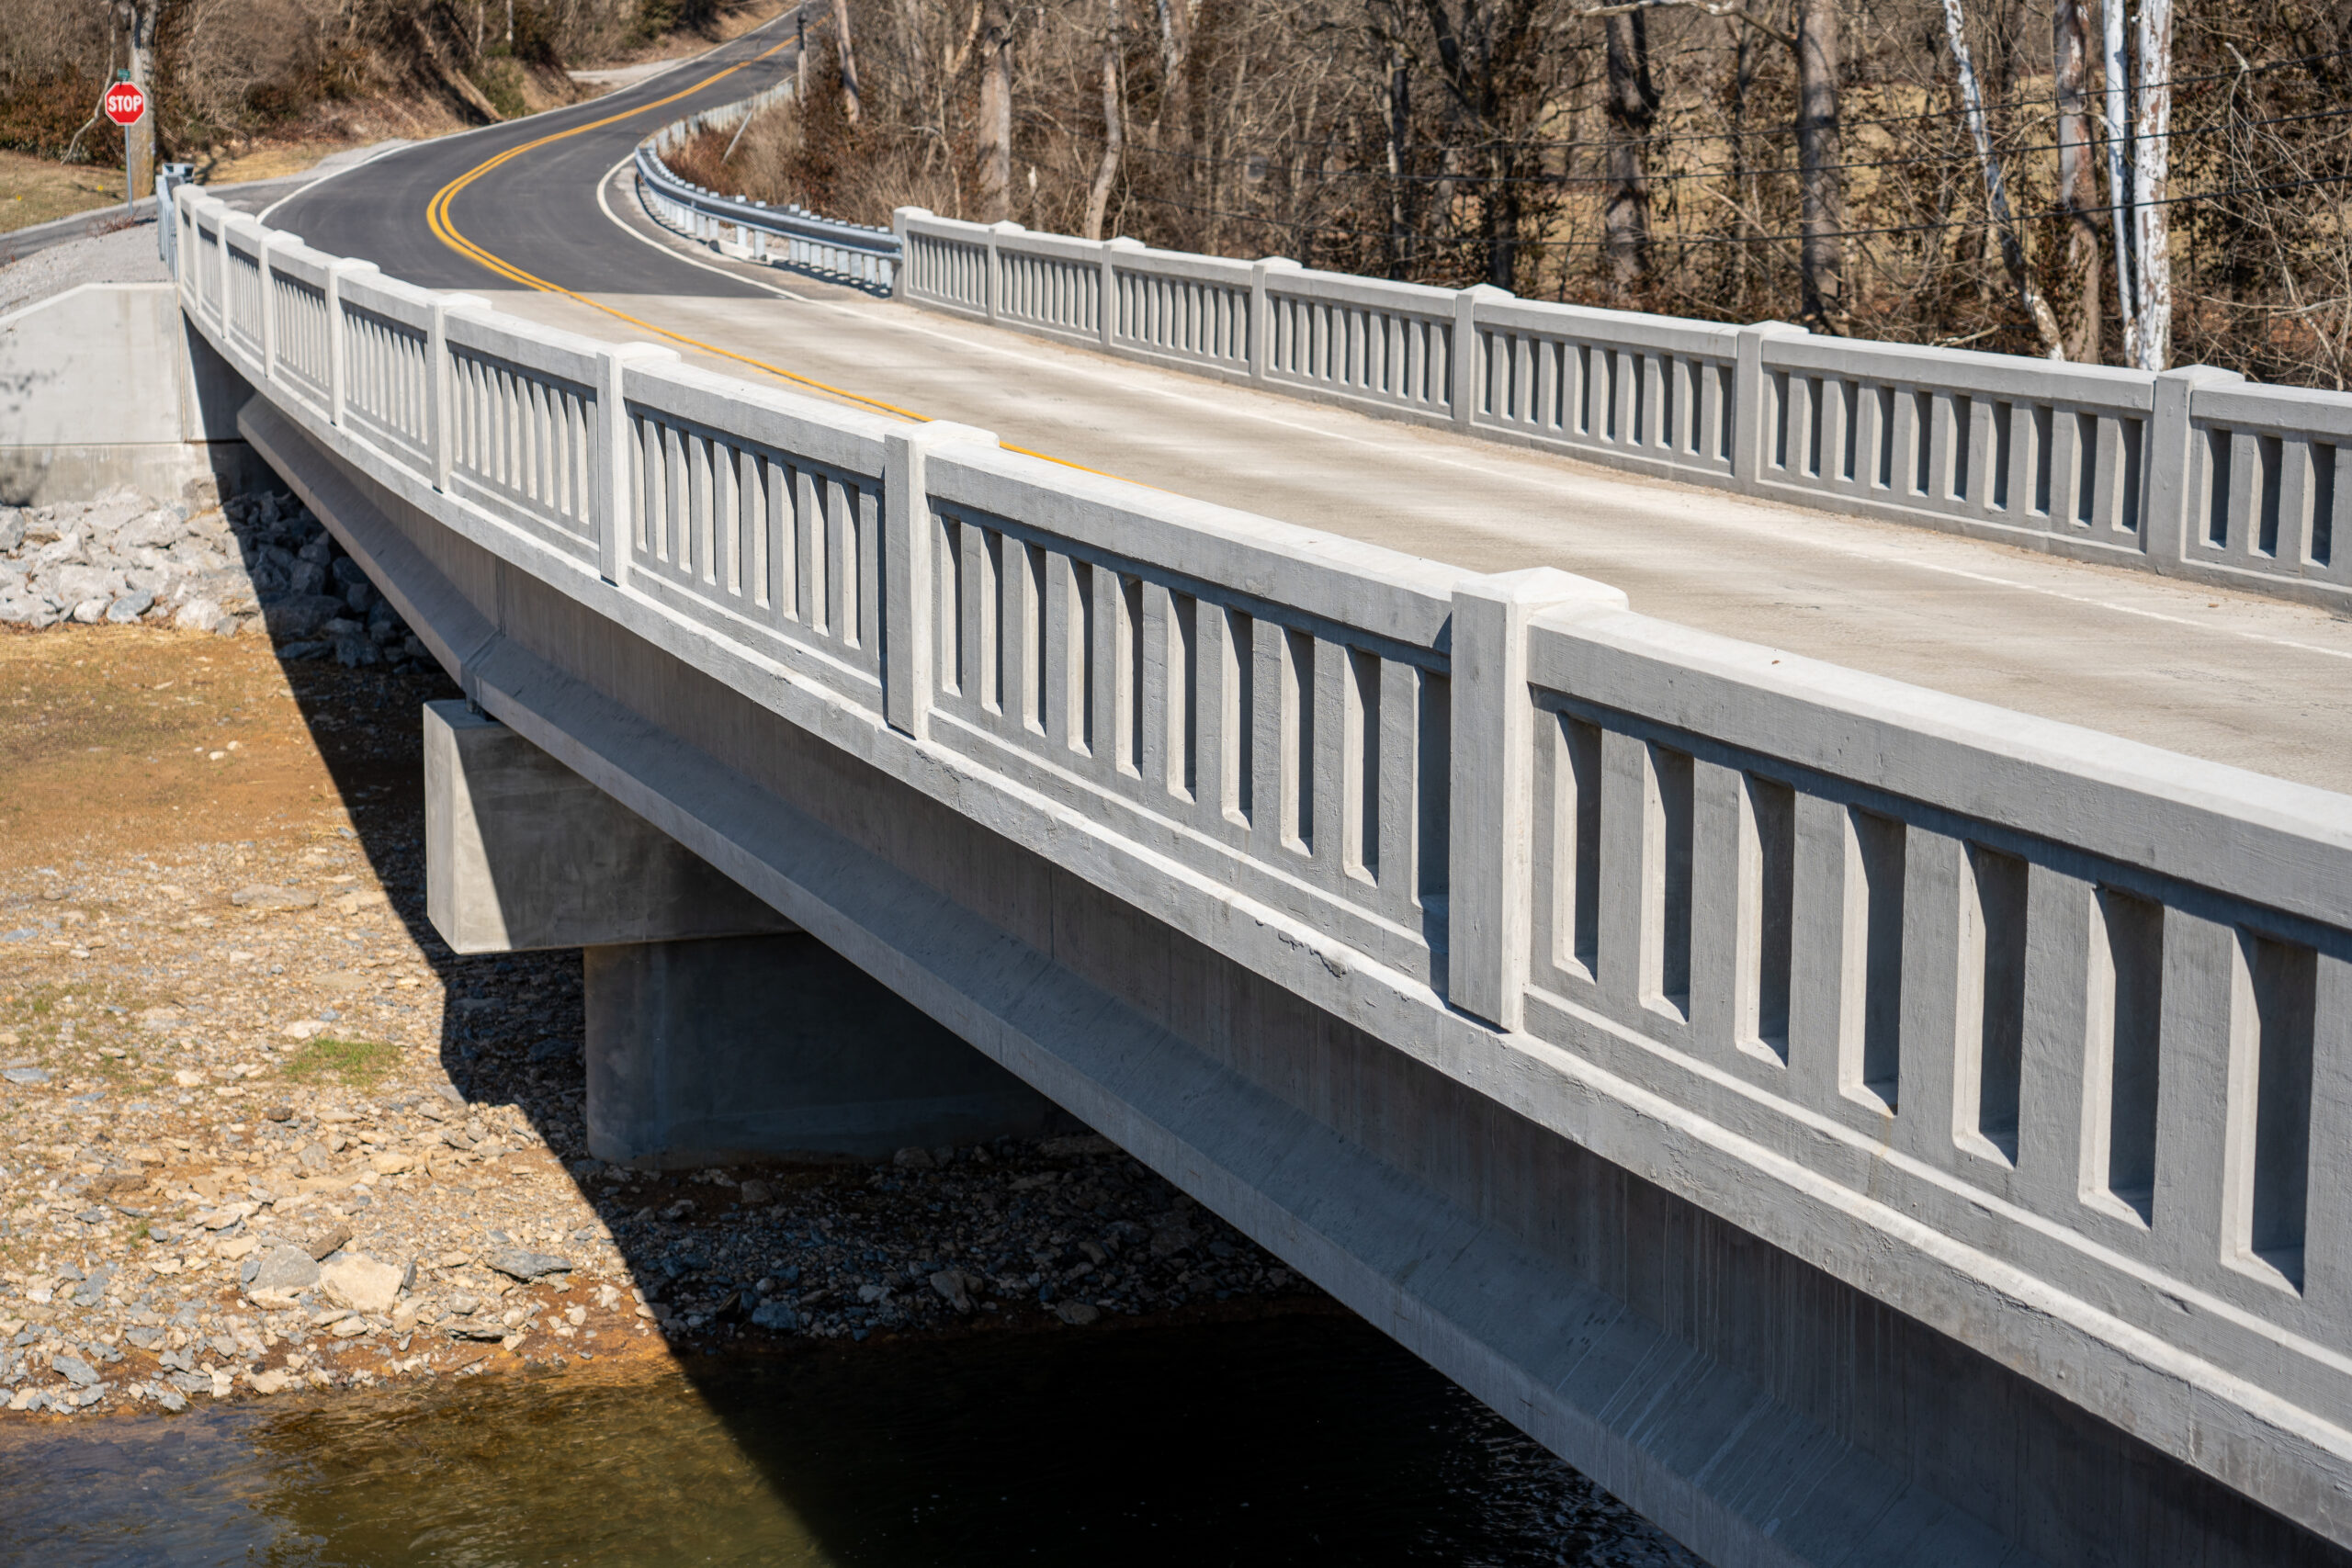 The new Black Bridge features traditional concrete rails.